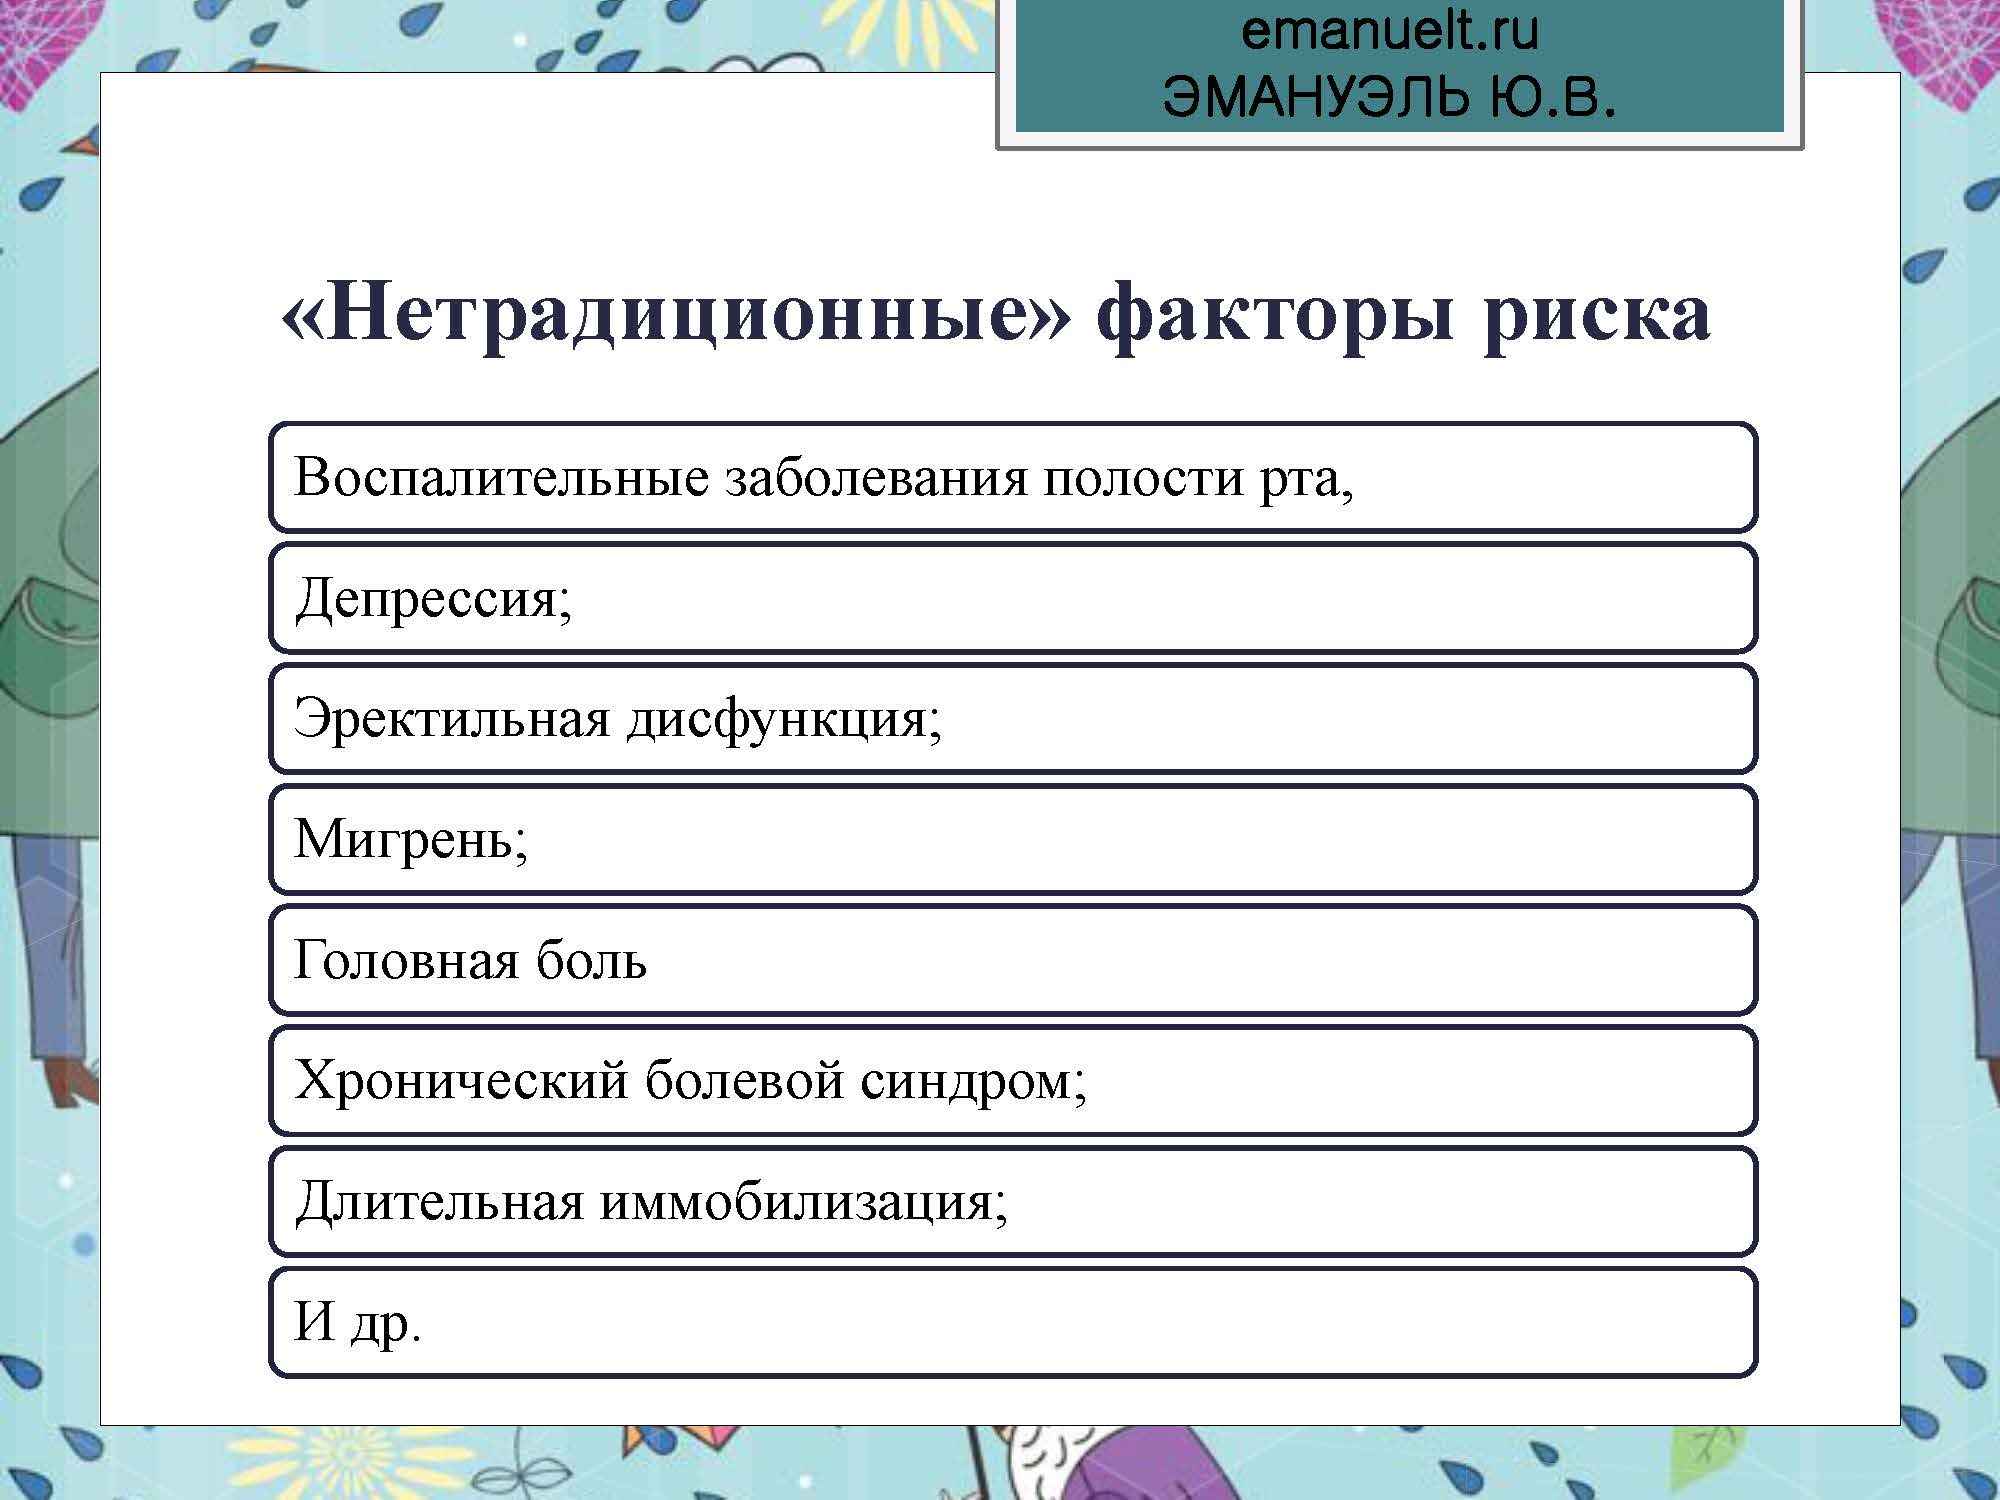 Секция 8. ЭЮВ. СПбГМУ.  26.03_Страница_32